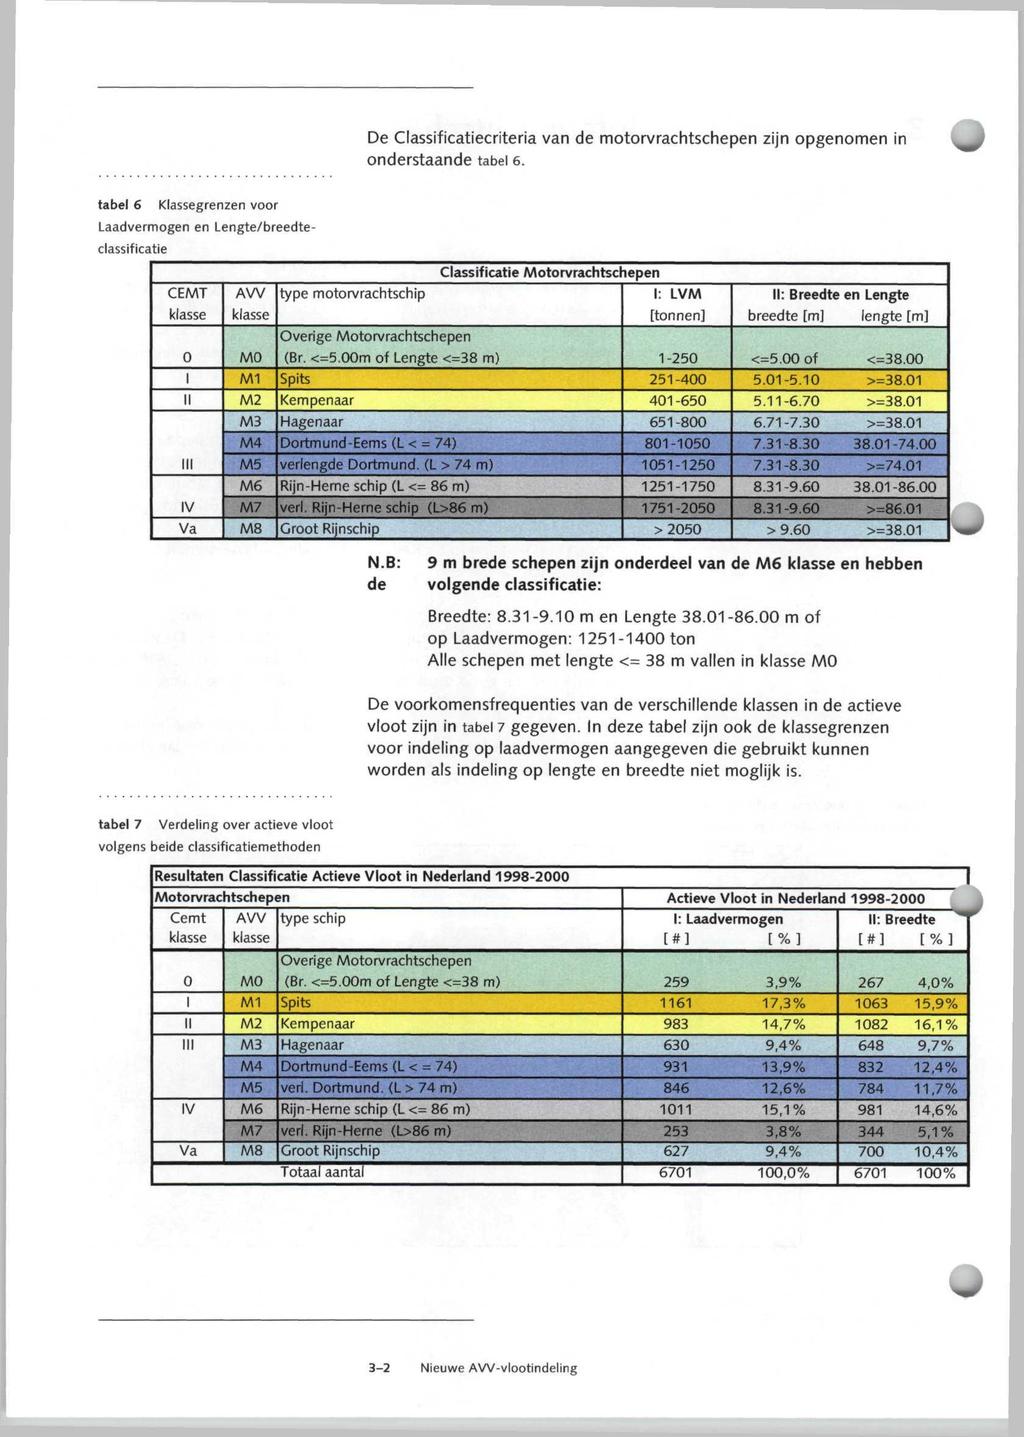 De Classificatiecriteria van de motorvrachtschepen zijn opgenomen in onderstaande tabel e.